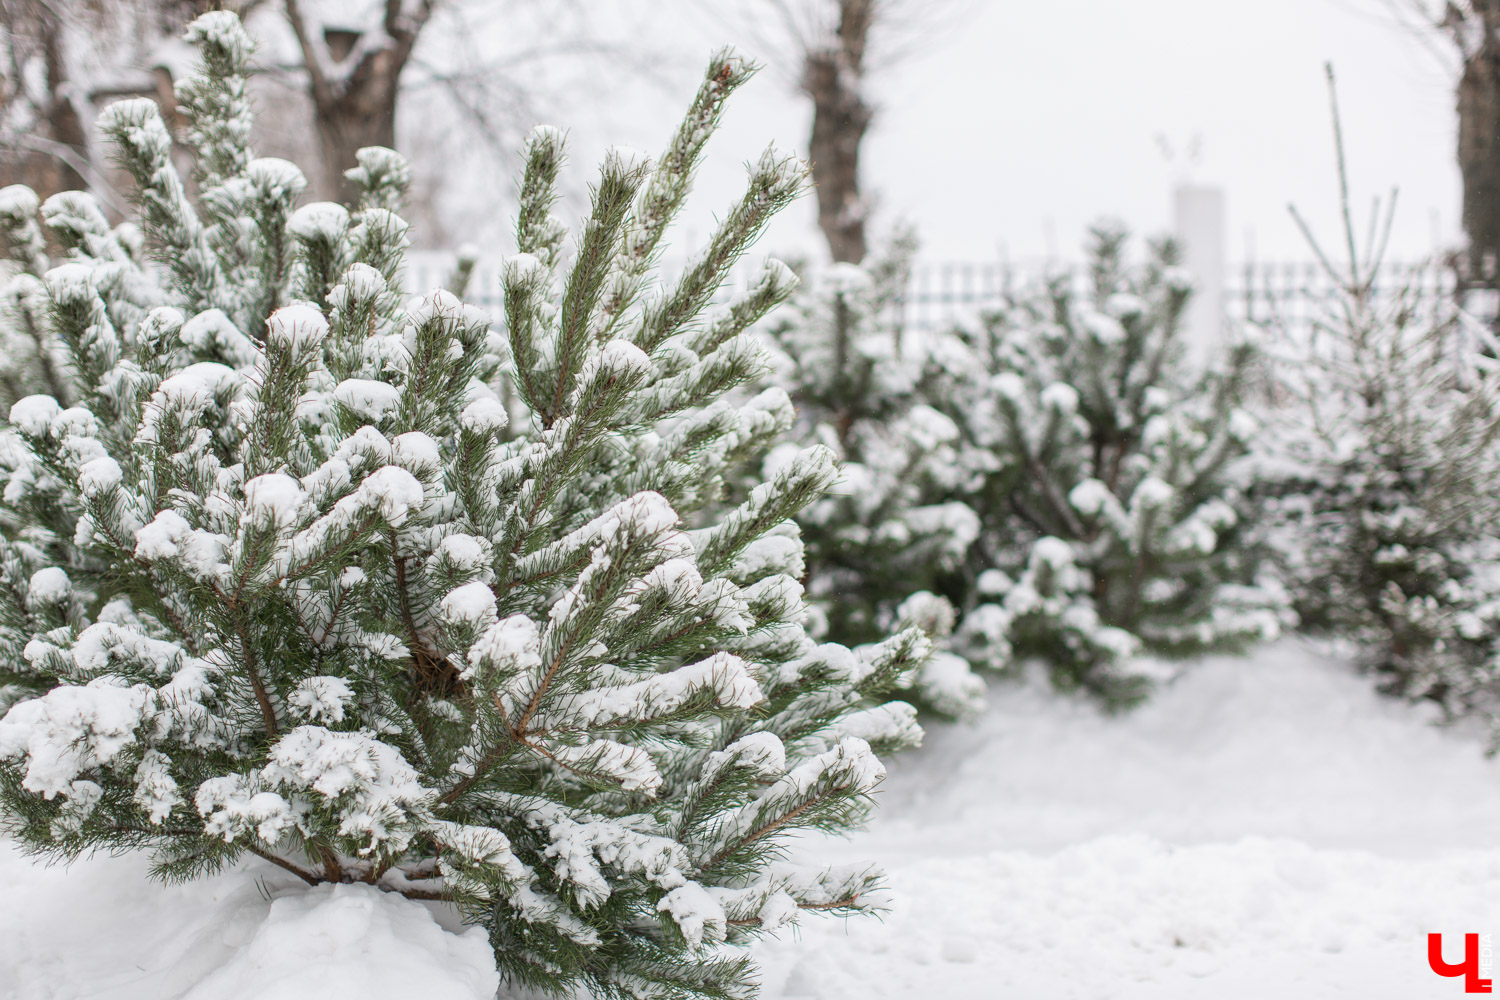 Купить елку в областном центре можно будет в пяти специально оборудованных точках с 24 декабря по 31 декабря.